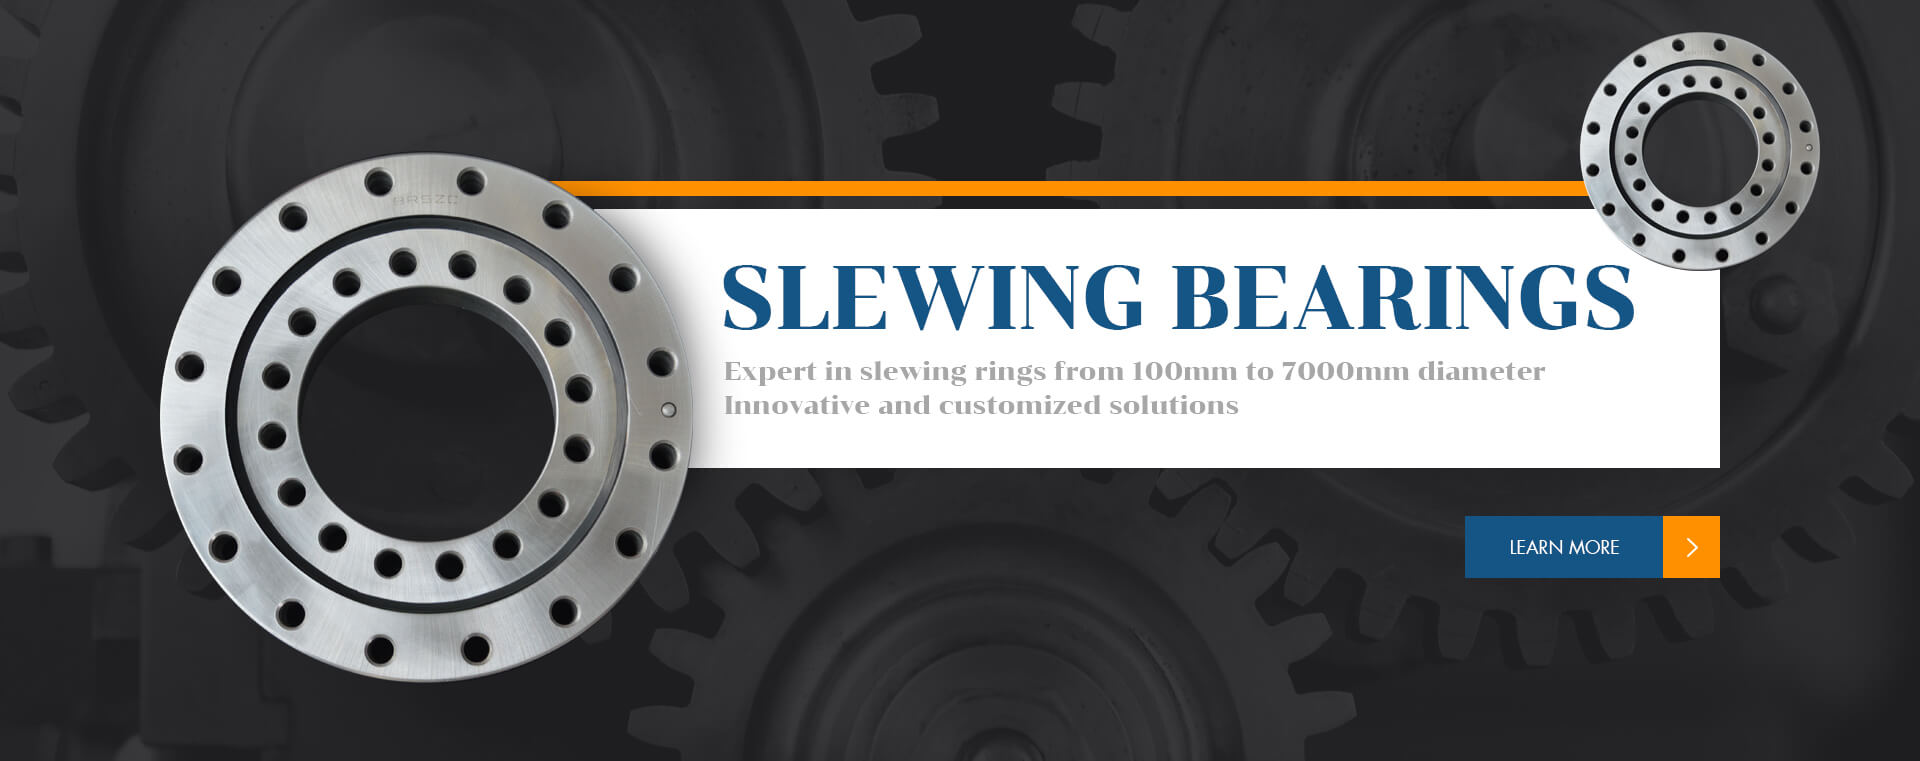 slewing bearings